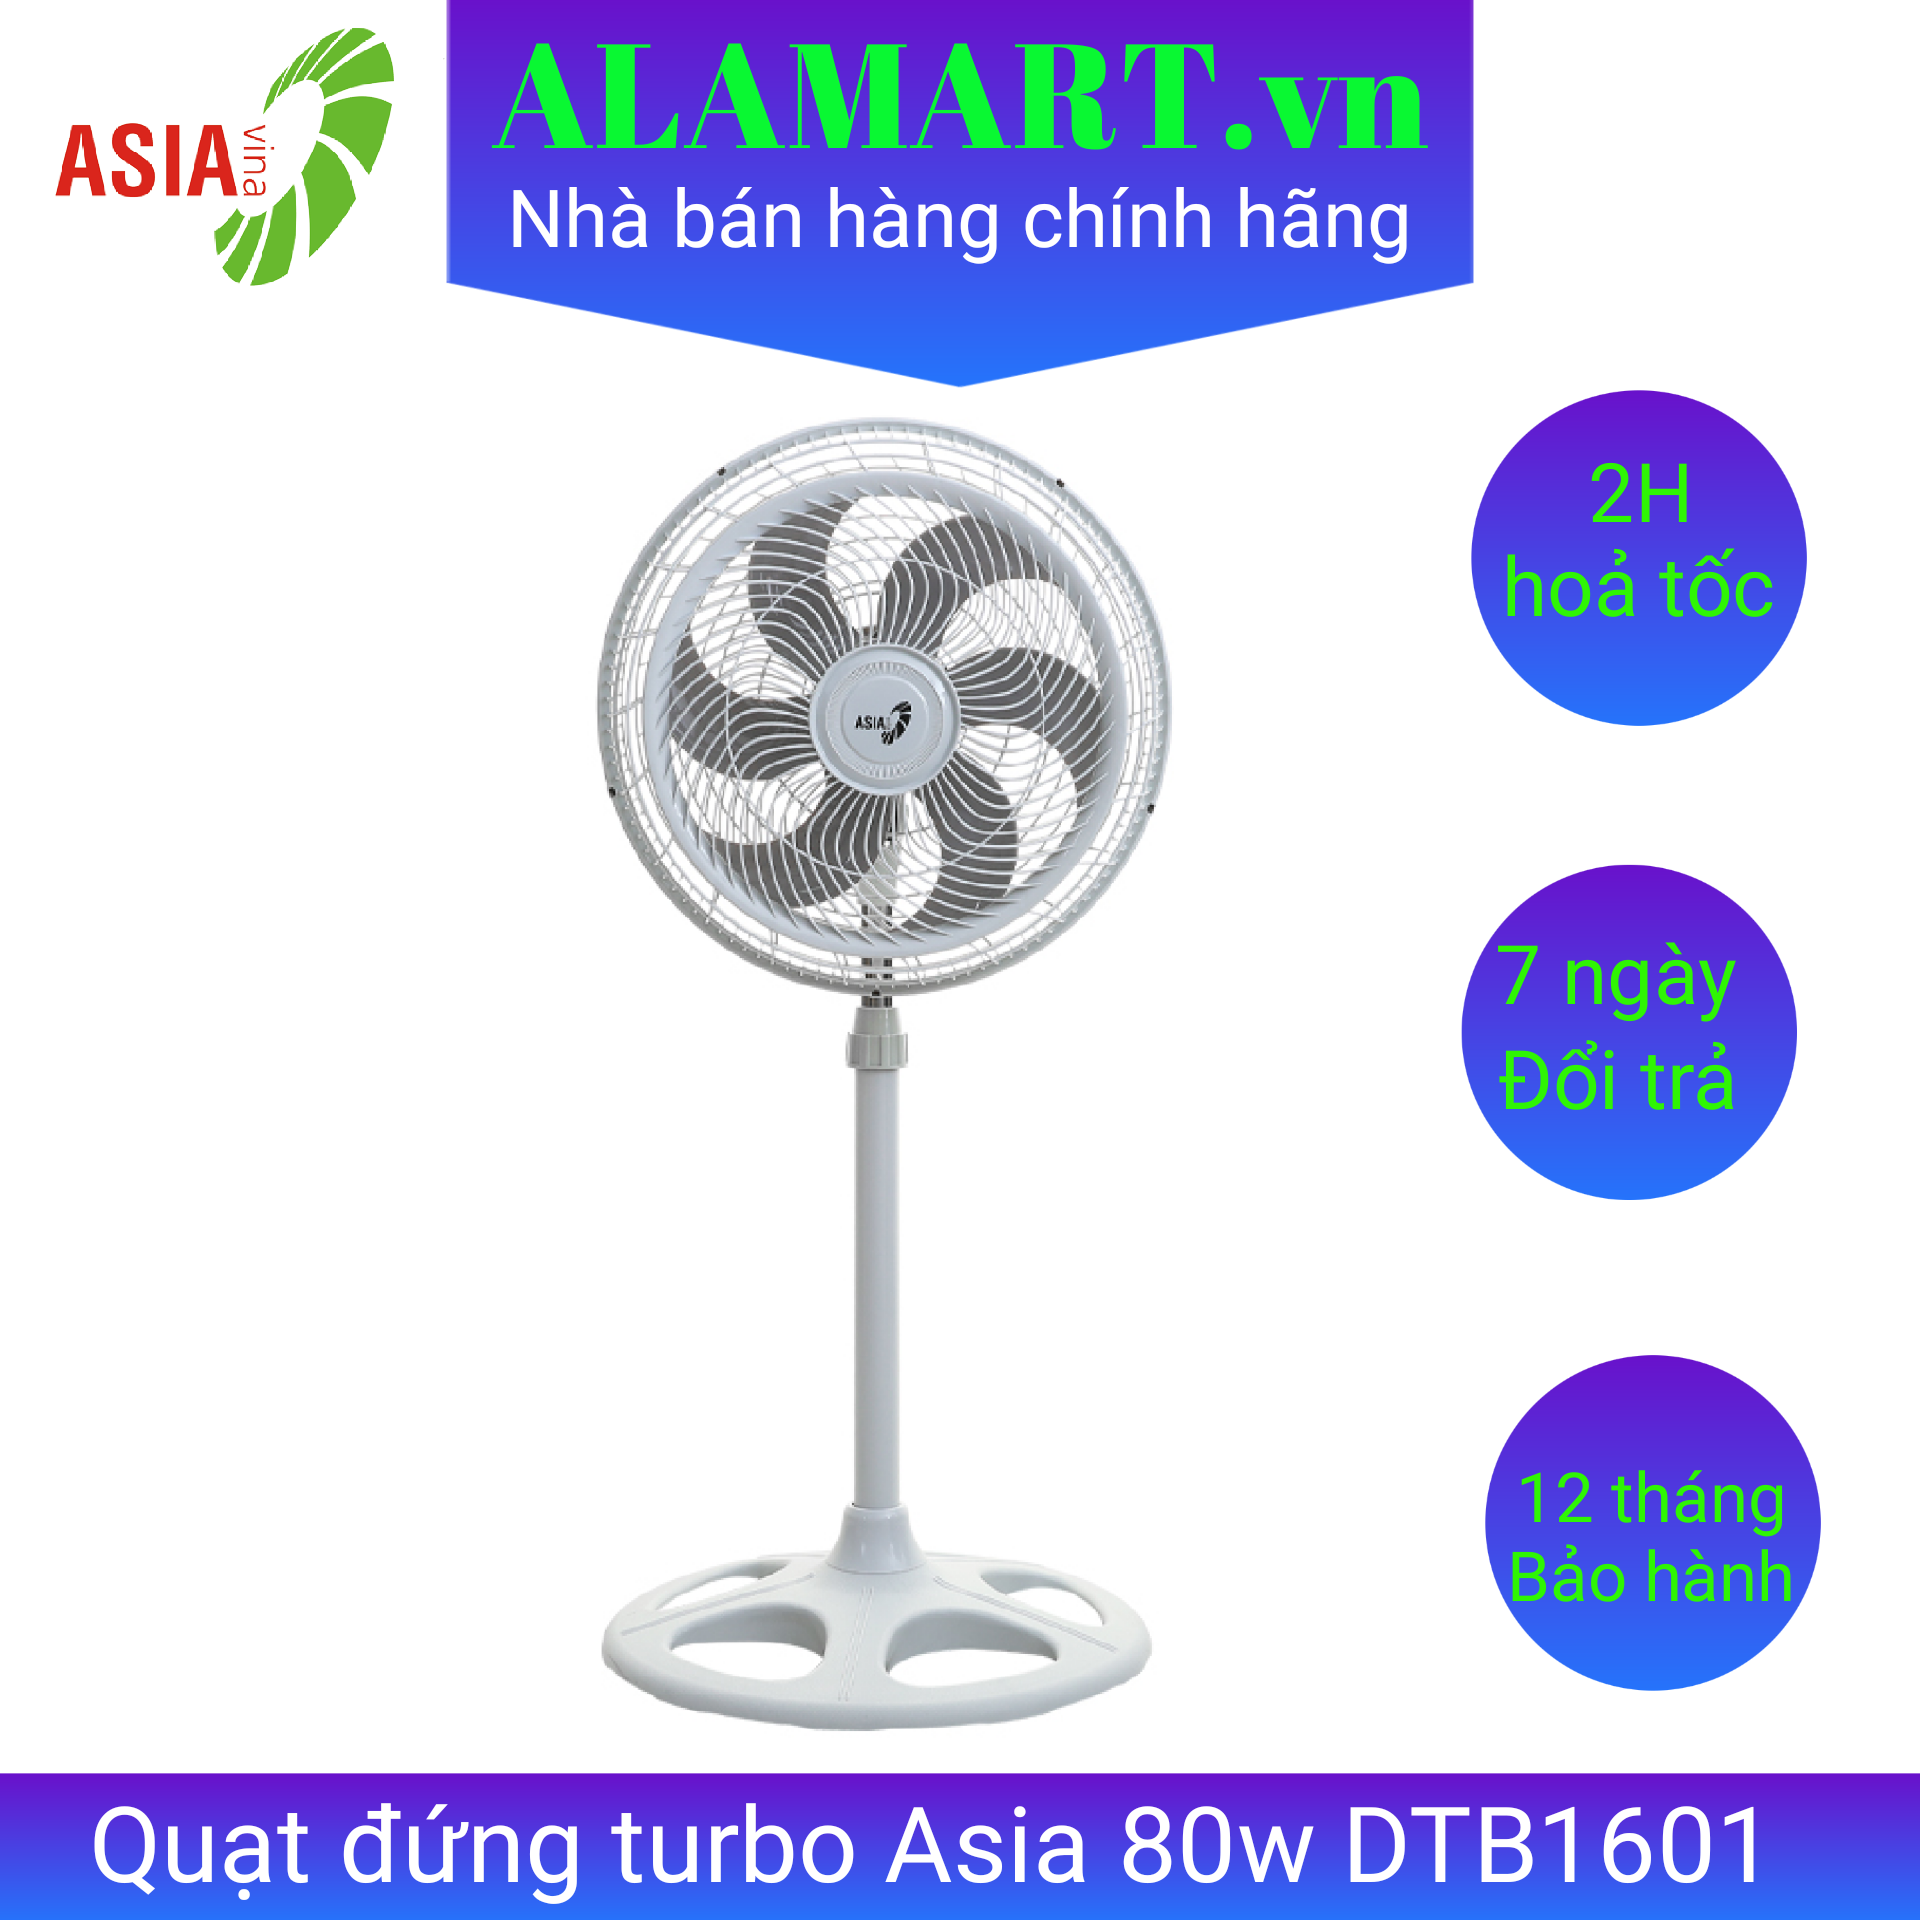 Quạt đứng turbo Asia DTB1601